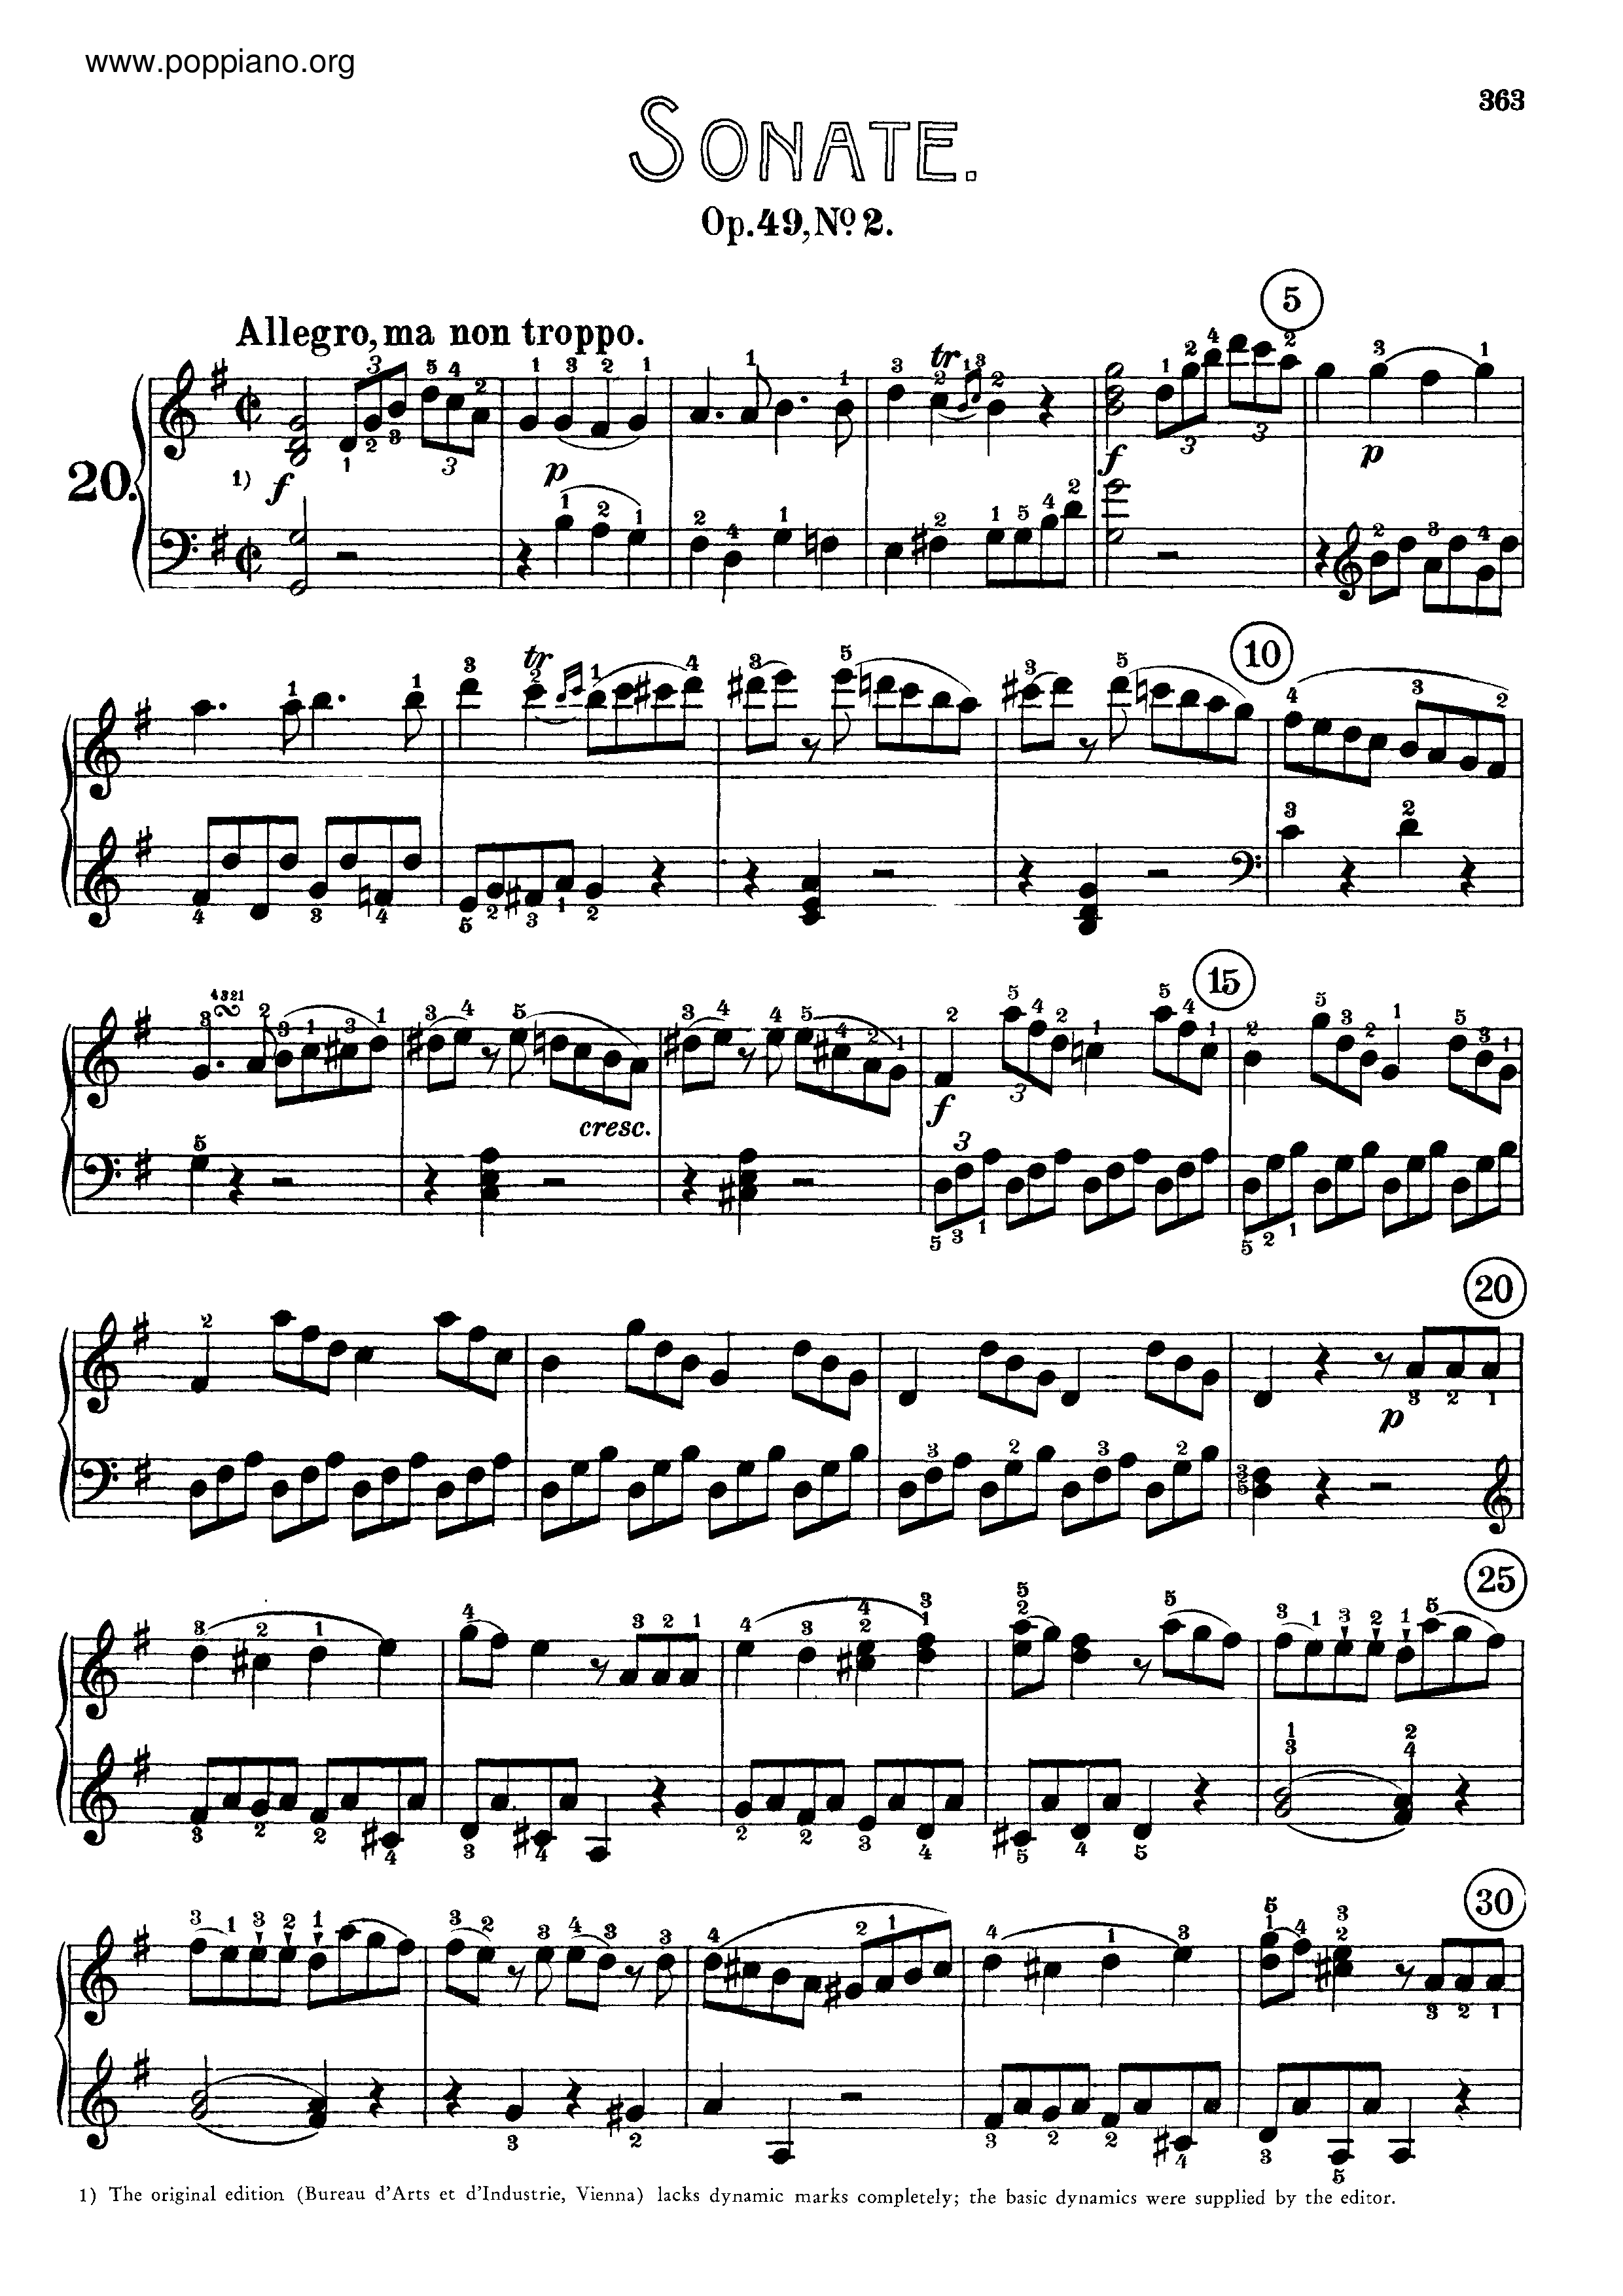 Sonata No. 20 in G major Score